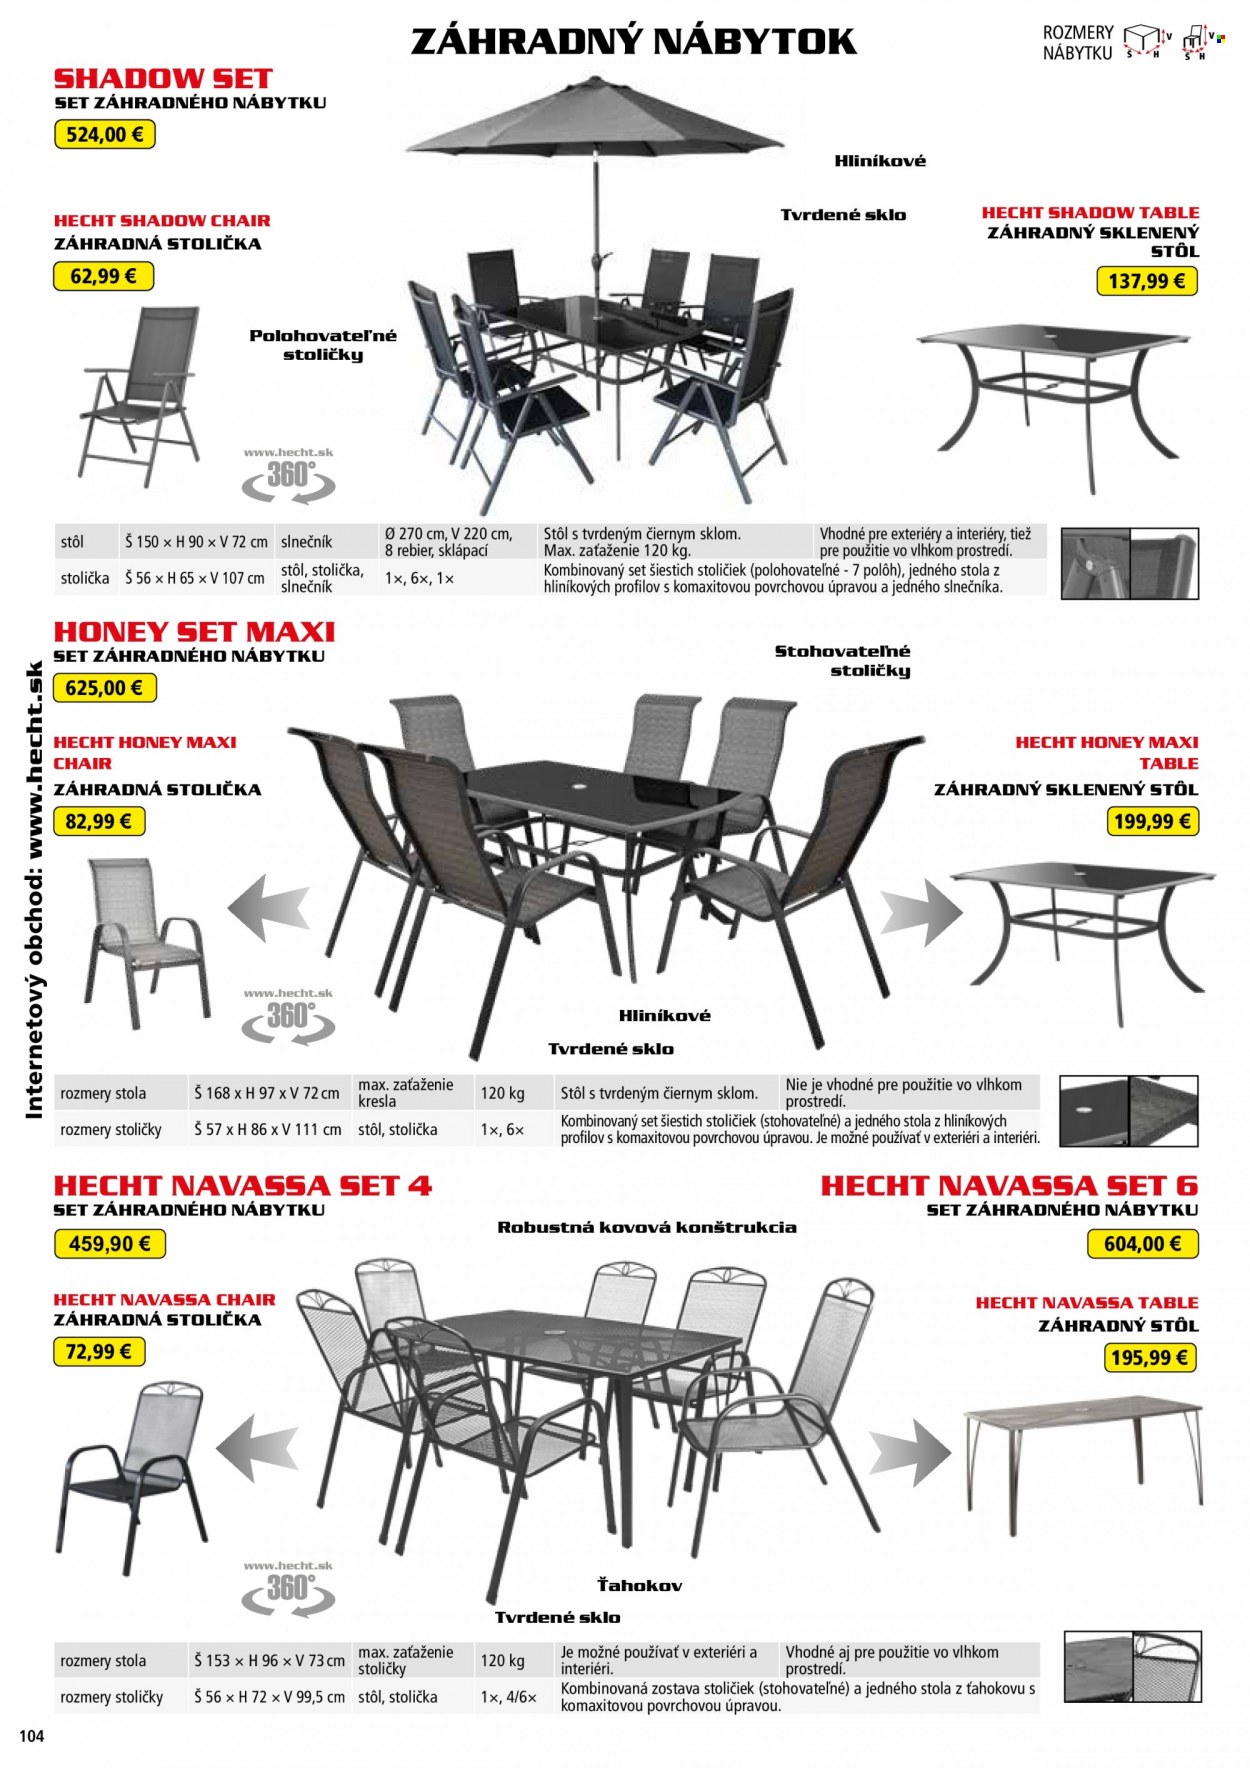 Leták Hecht - 14.8.2022 - 28.2.2023 - Produkty v akcii - Hecht, zahradný nábytok, stôl, záhradný stôl, stolička, kreslo, záhradná stolička, slnečník. Strana 104.